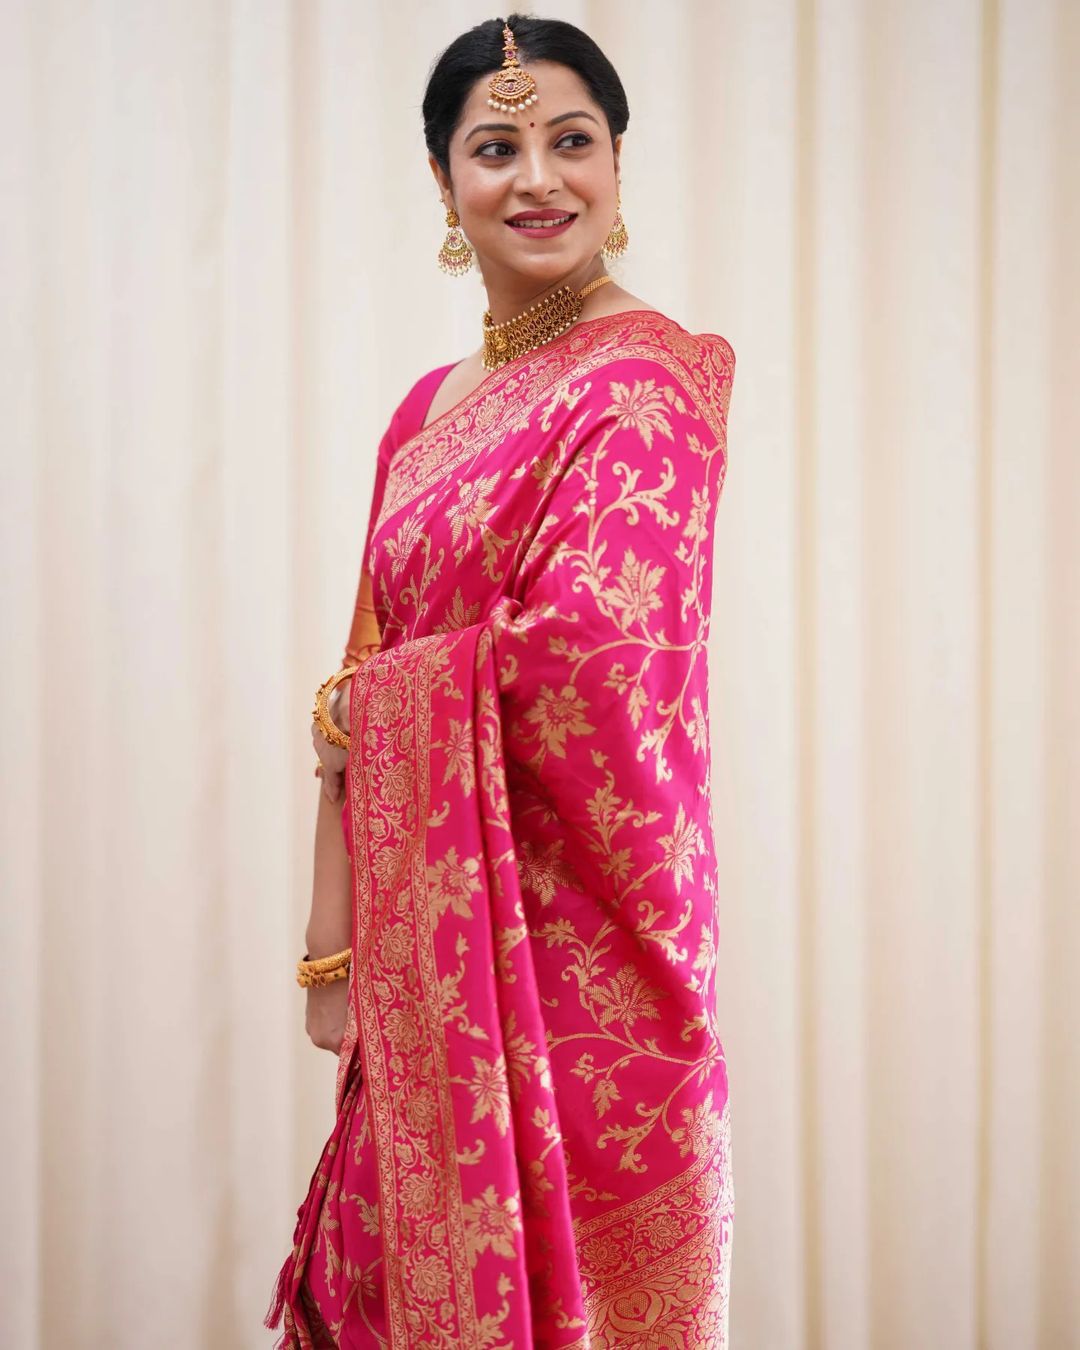 Denouement Dark Pink Soft Banarasi Silk Saree With Prodigal Blouse Piece - Colorful Saree